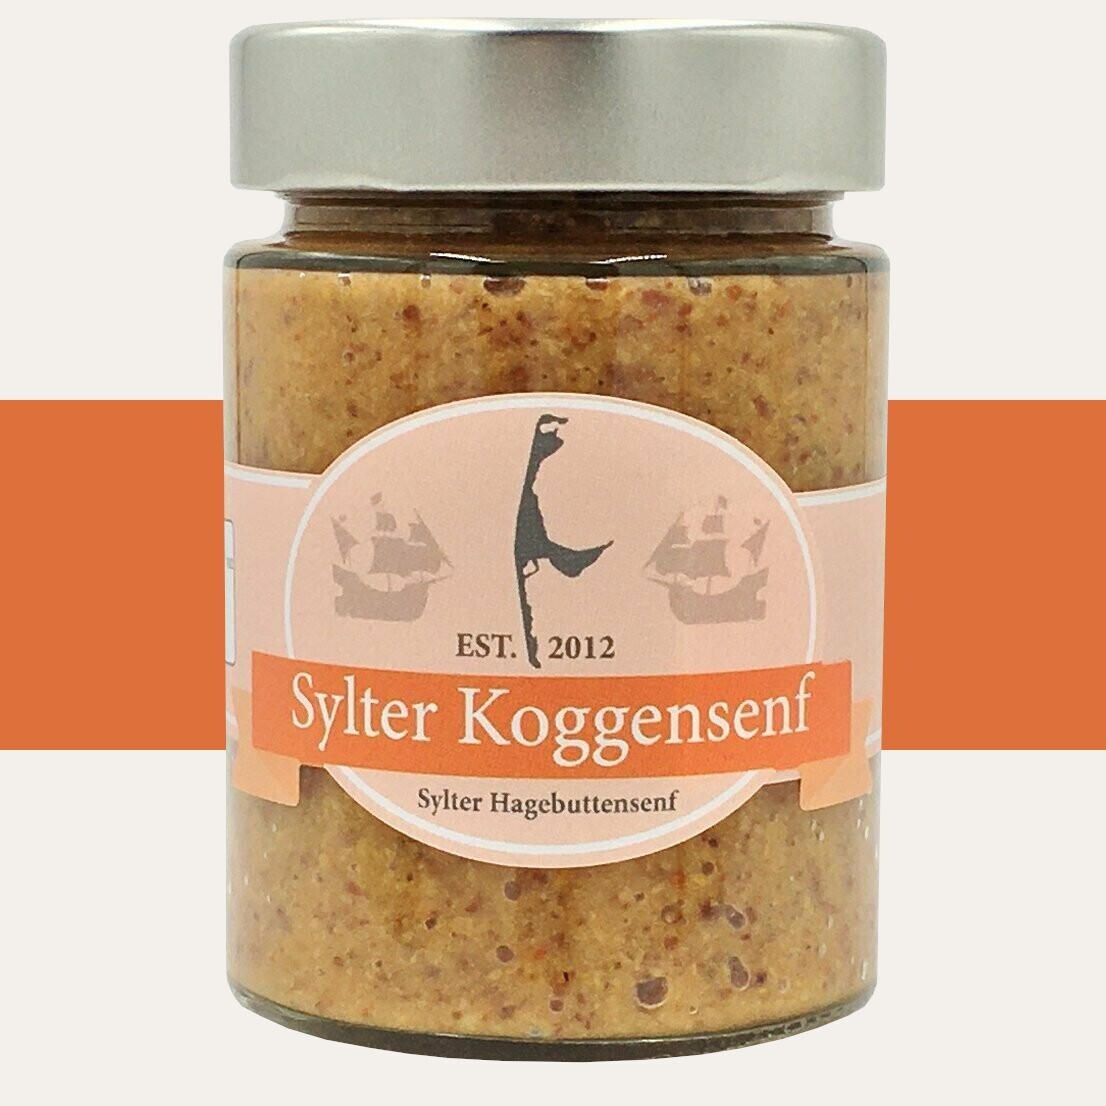 Sylter Koggensenf - Hagebuttensenf